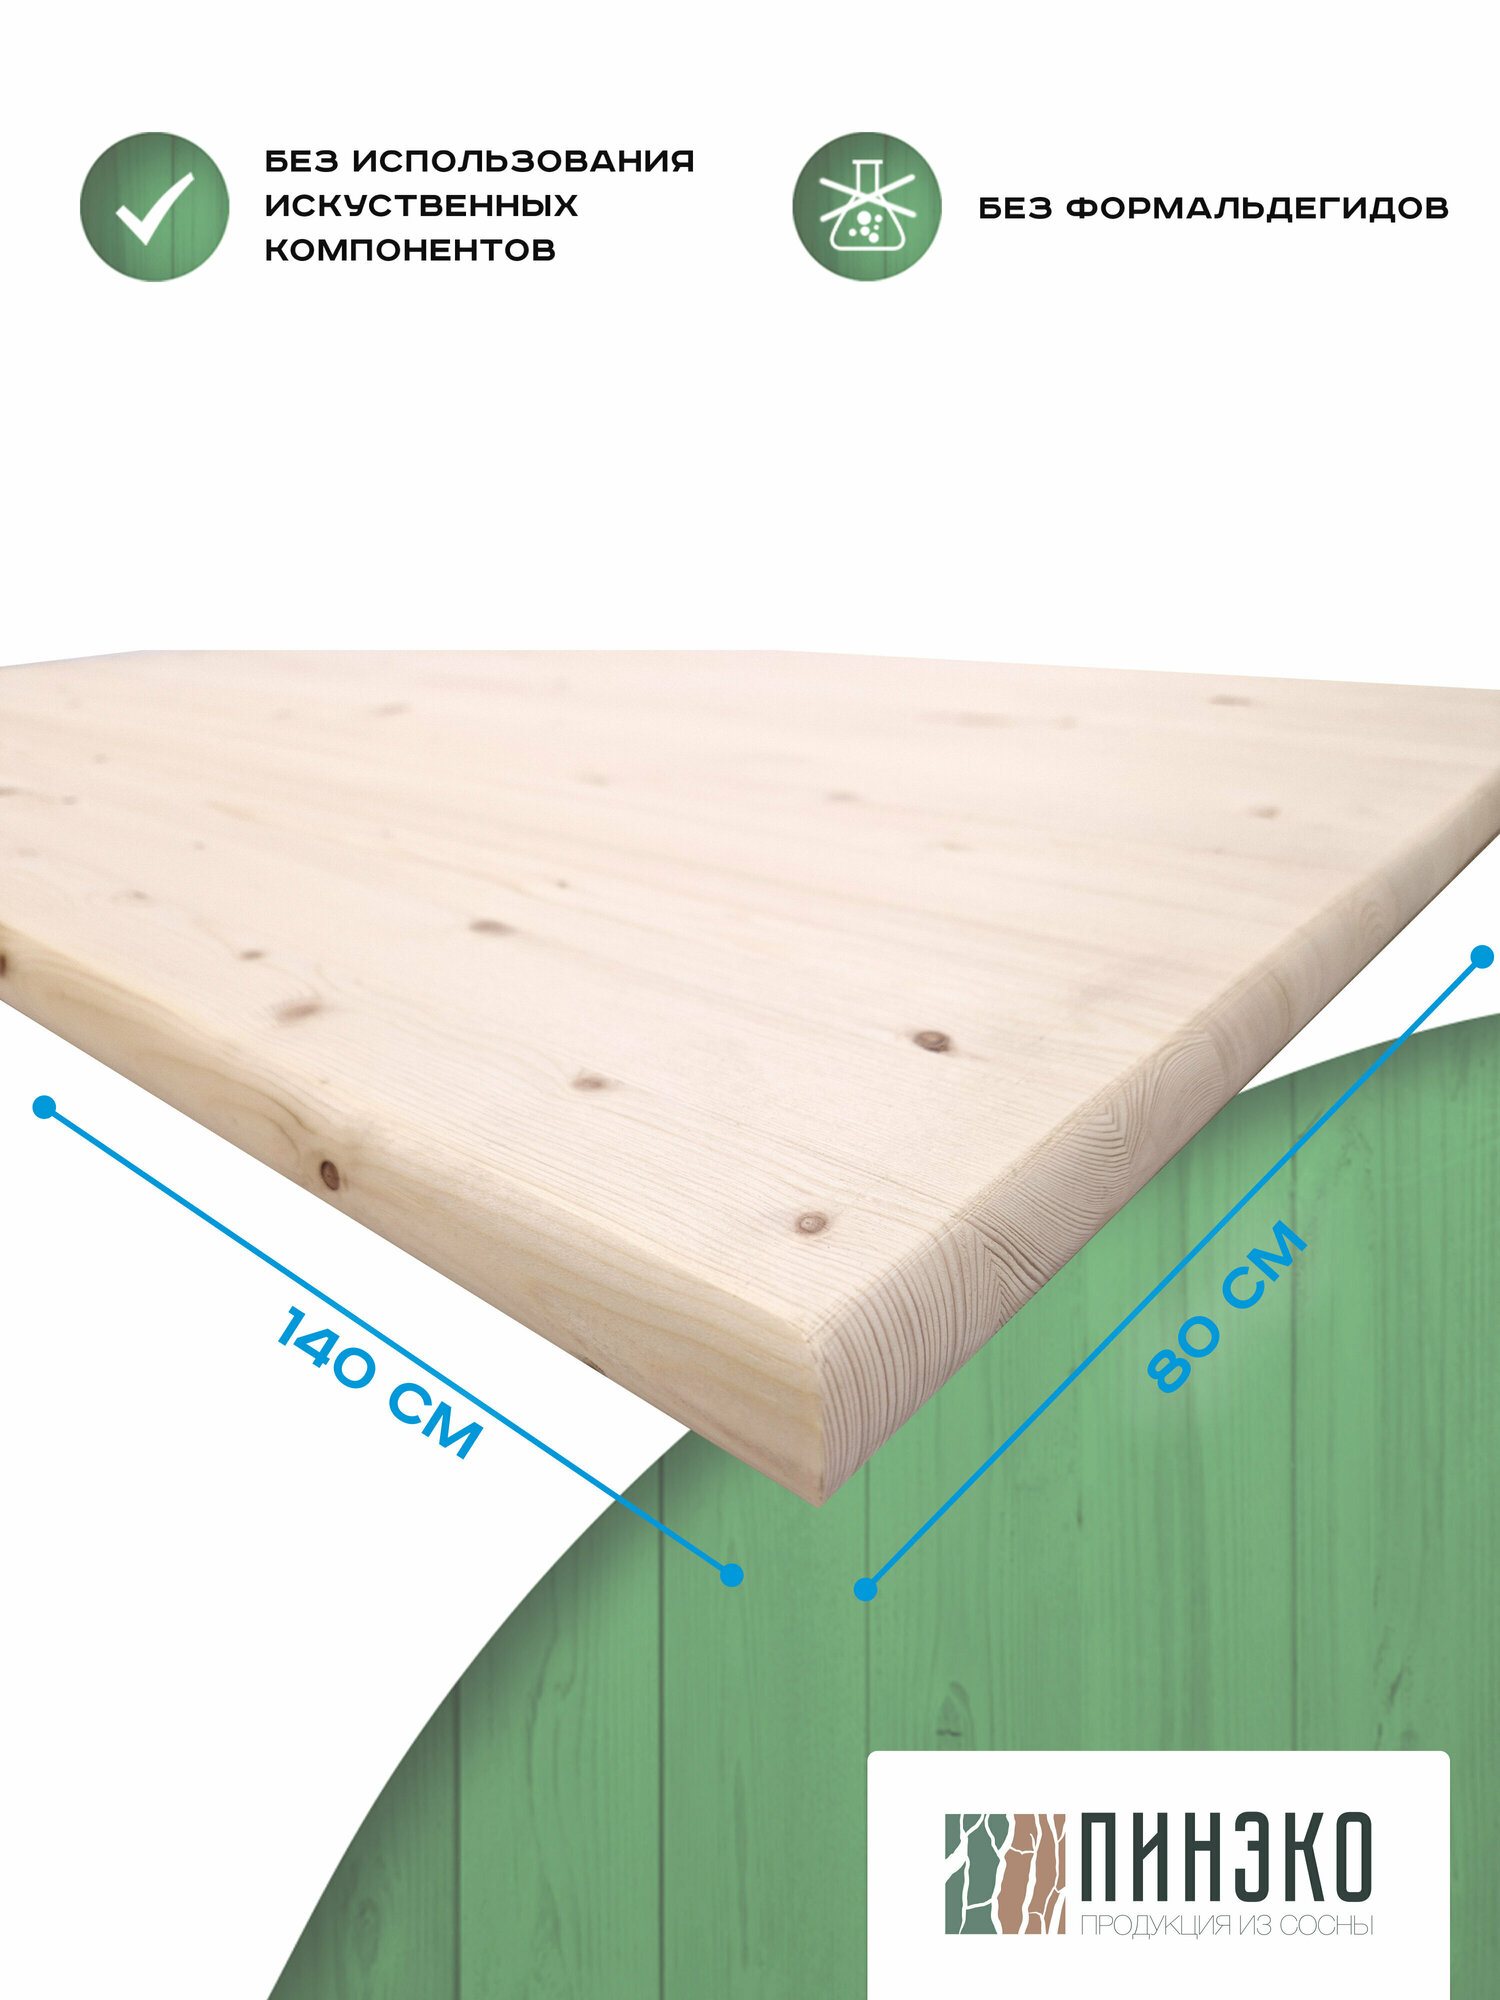 Столешница деревянная прямоугольная 140х80 см. Материал: Вологодская сосна